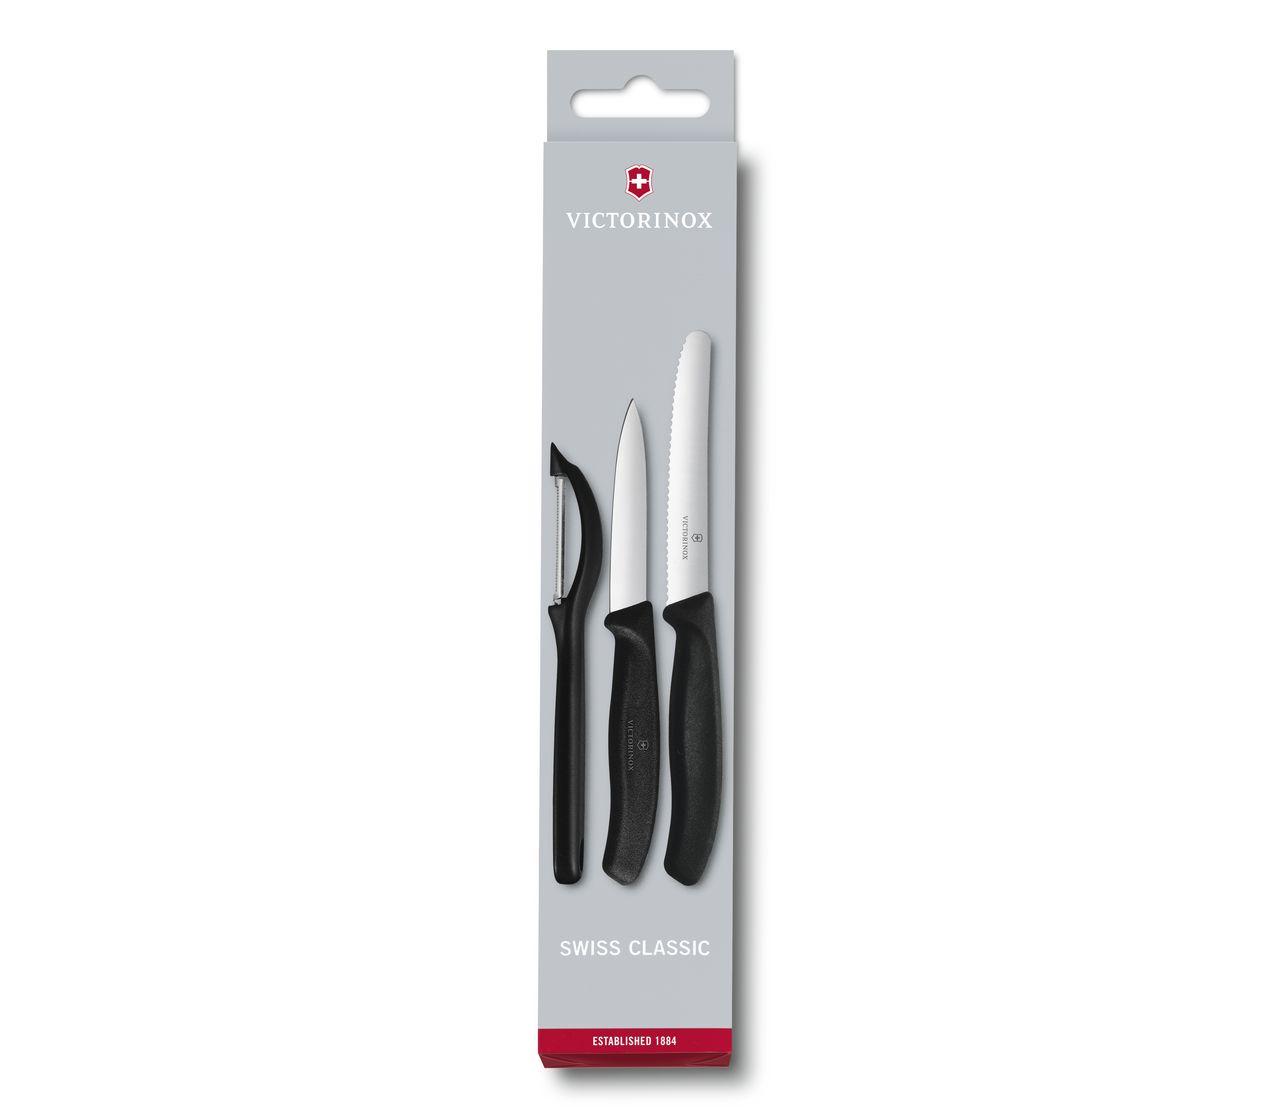 Paring Knife Set: (3) 3.5 Paring Knives & Sheaths & Soft Handles!  #CWB02111